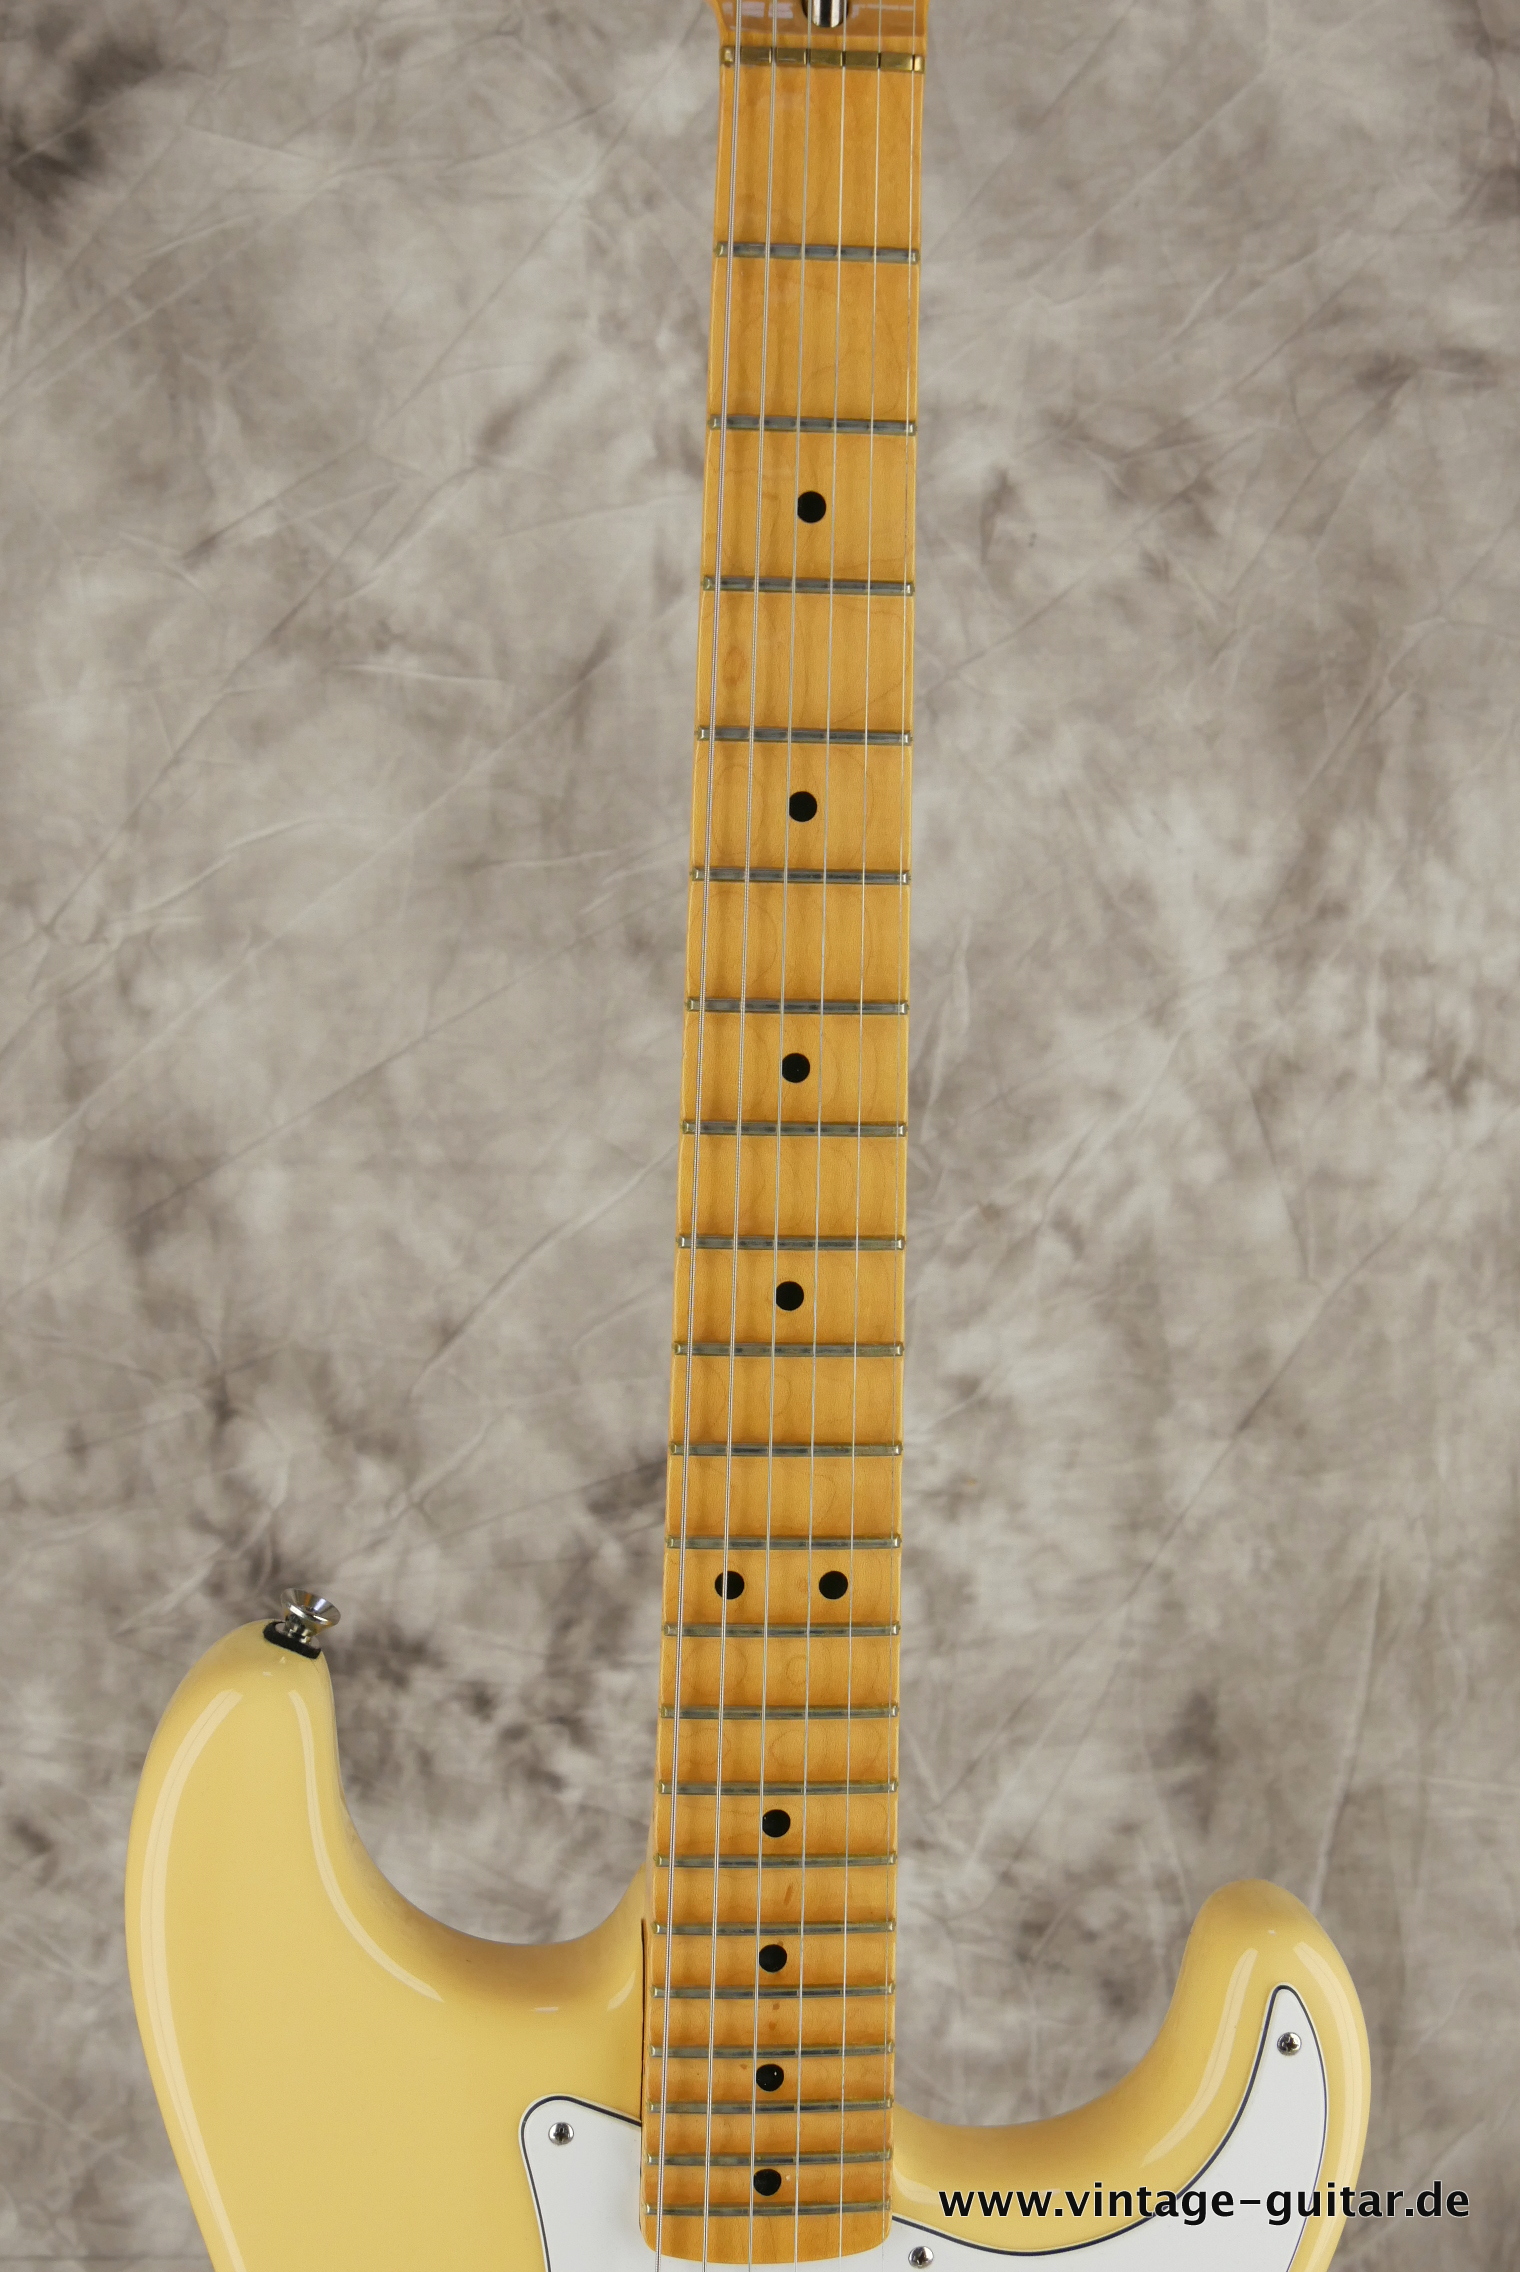 Fender-Stratocaster-Yngwie_malmsteen-2007-scalloped-008.JPG